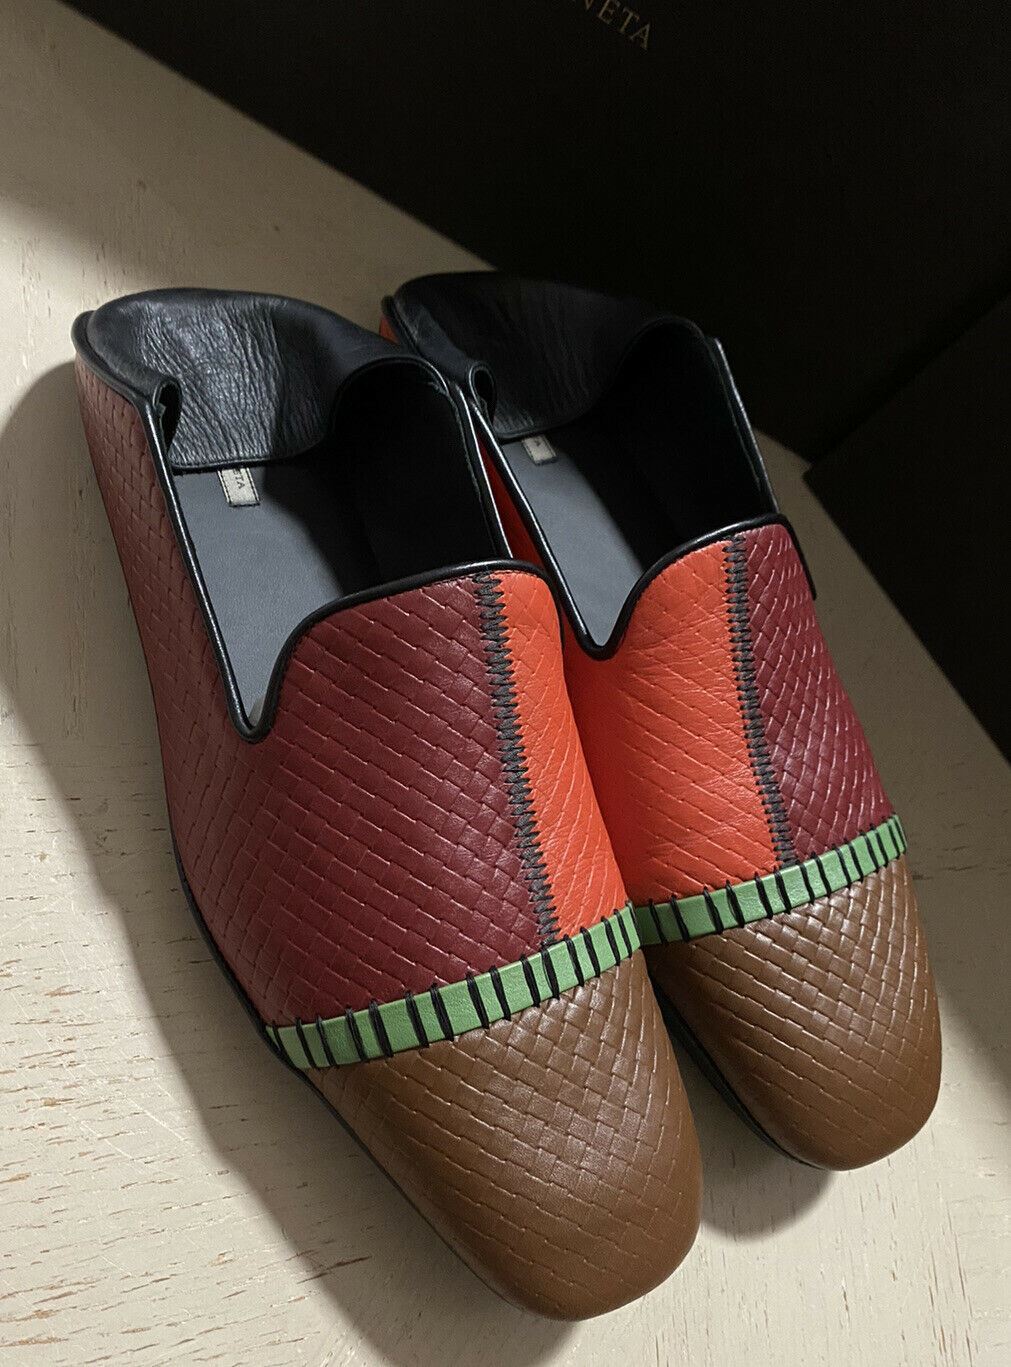 СПИ $710 Bottega Veneta Мужские кожаные лоферы/сандалии 4 цвета 7 США/40 ЕС